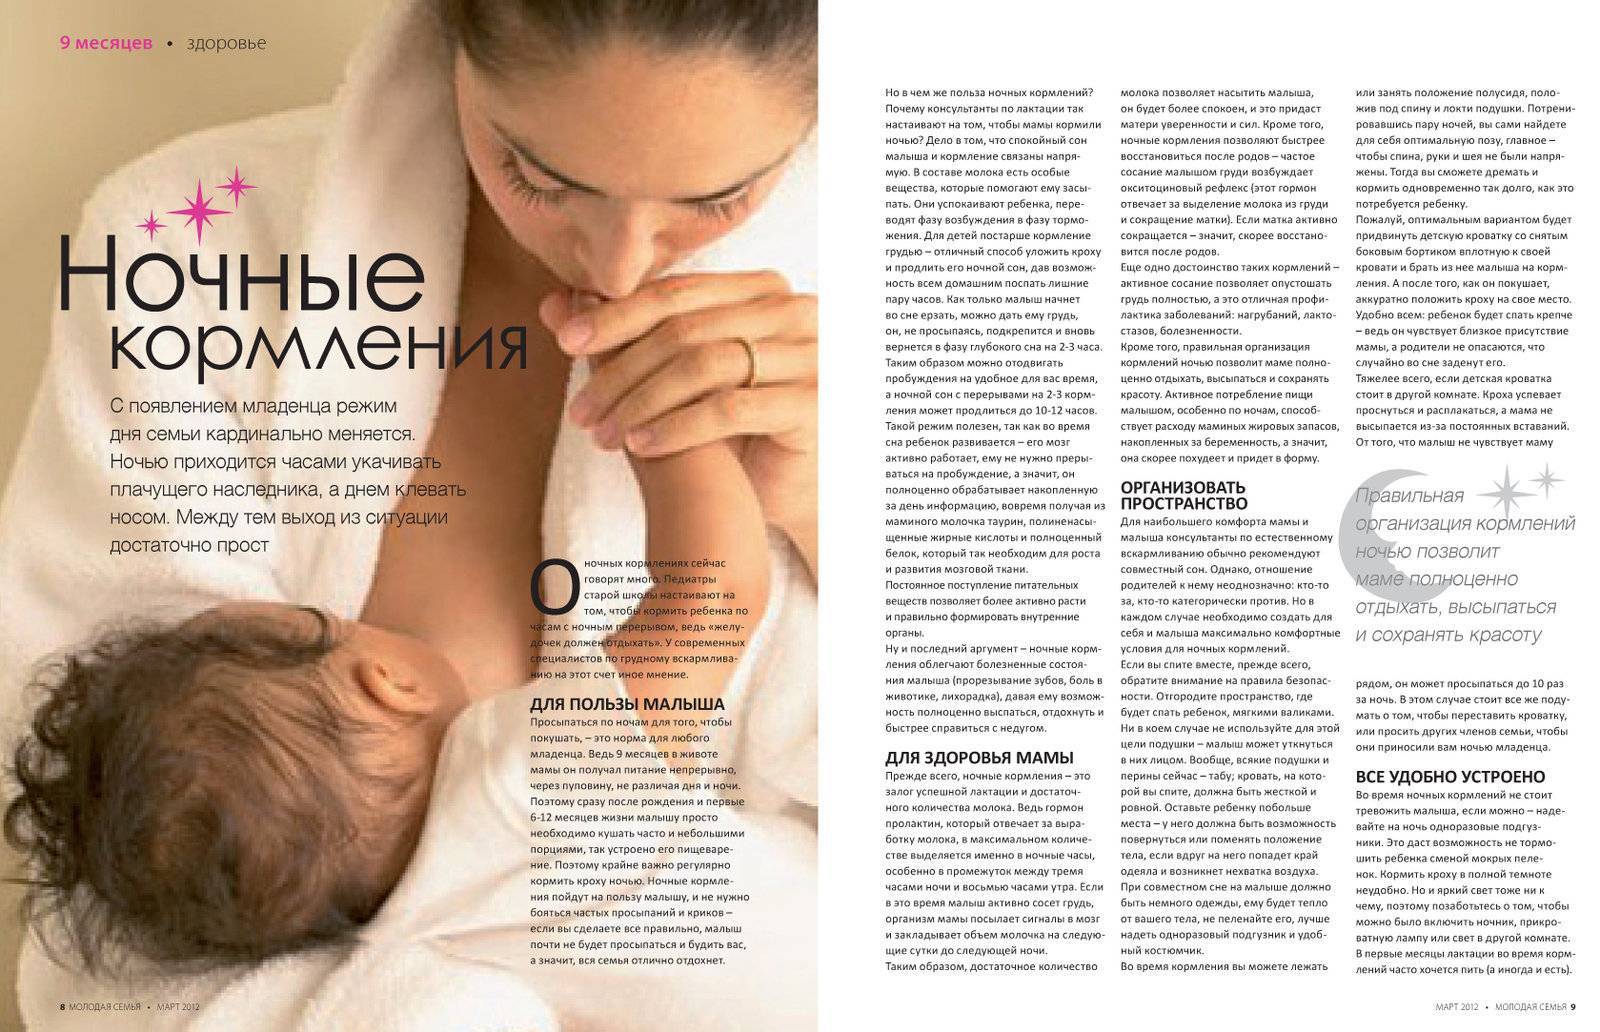 Как уложить спать новорожденного - маленькое чудо